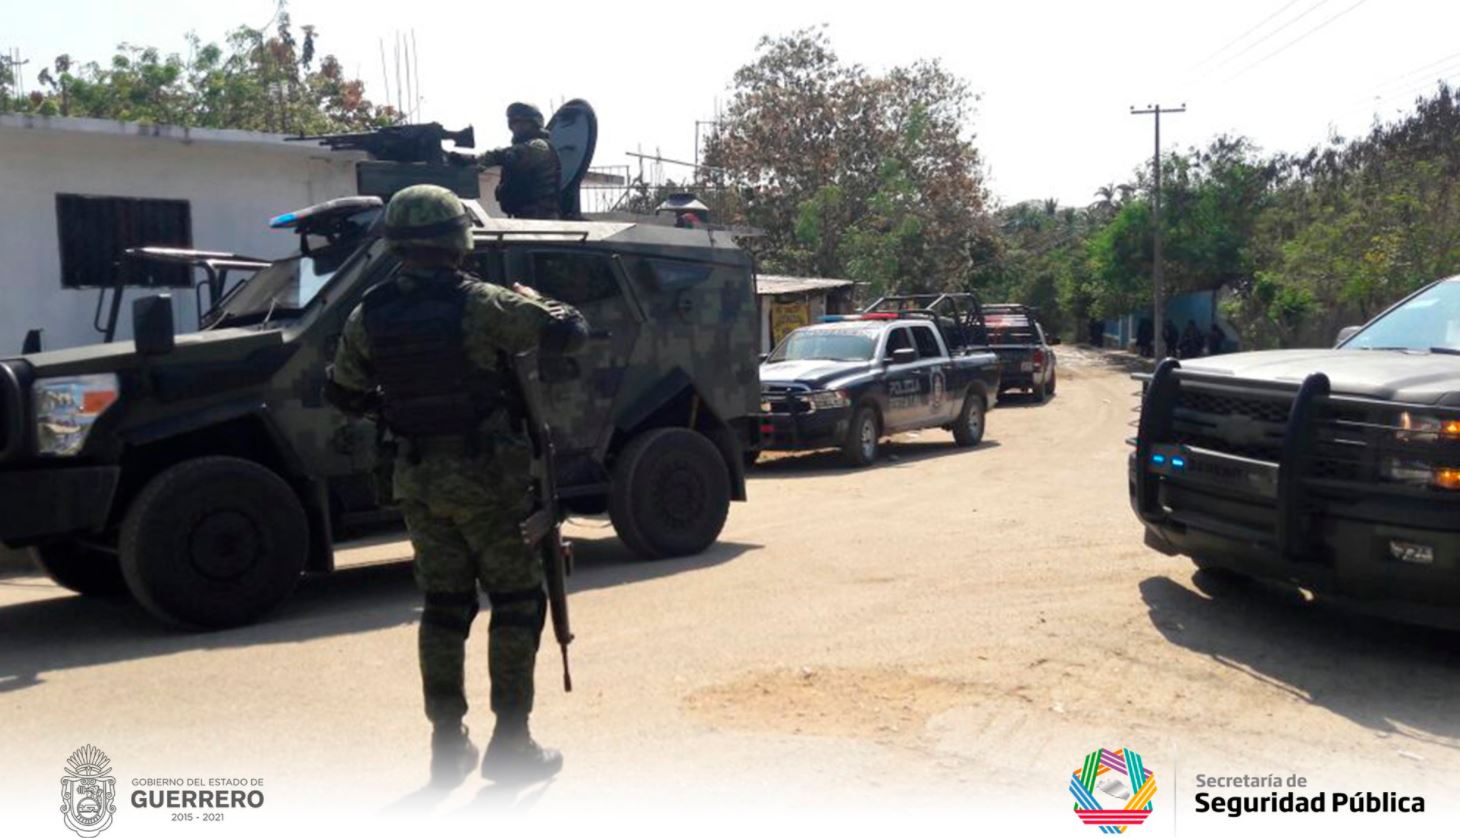 Consignan a 19 detenidos por enfrentamiento en Guerrero que dejó 11 muertos